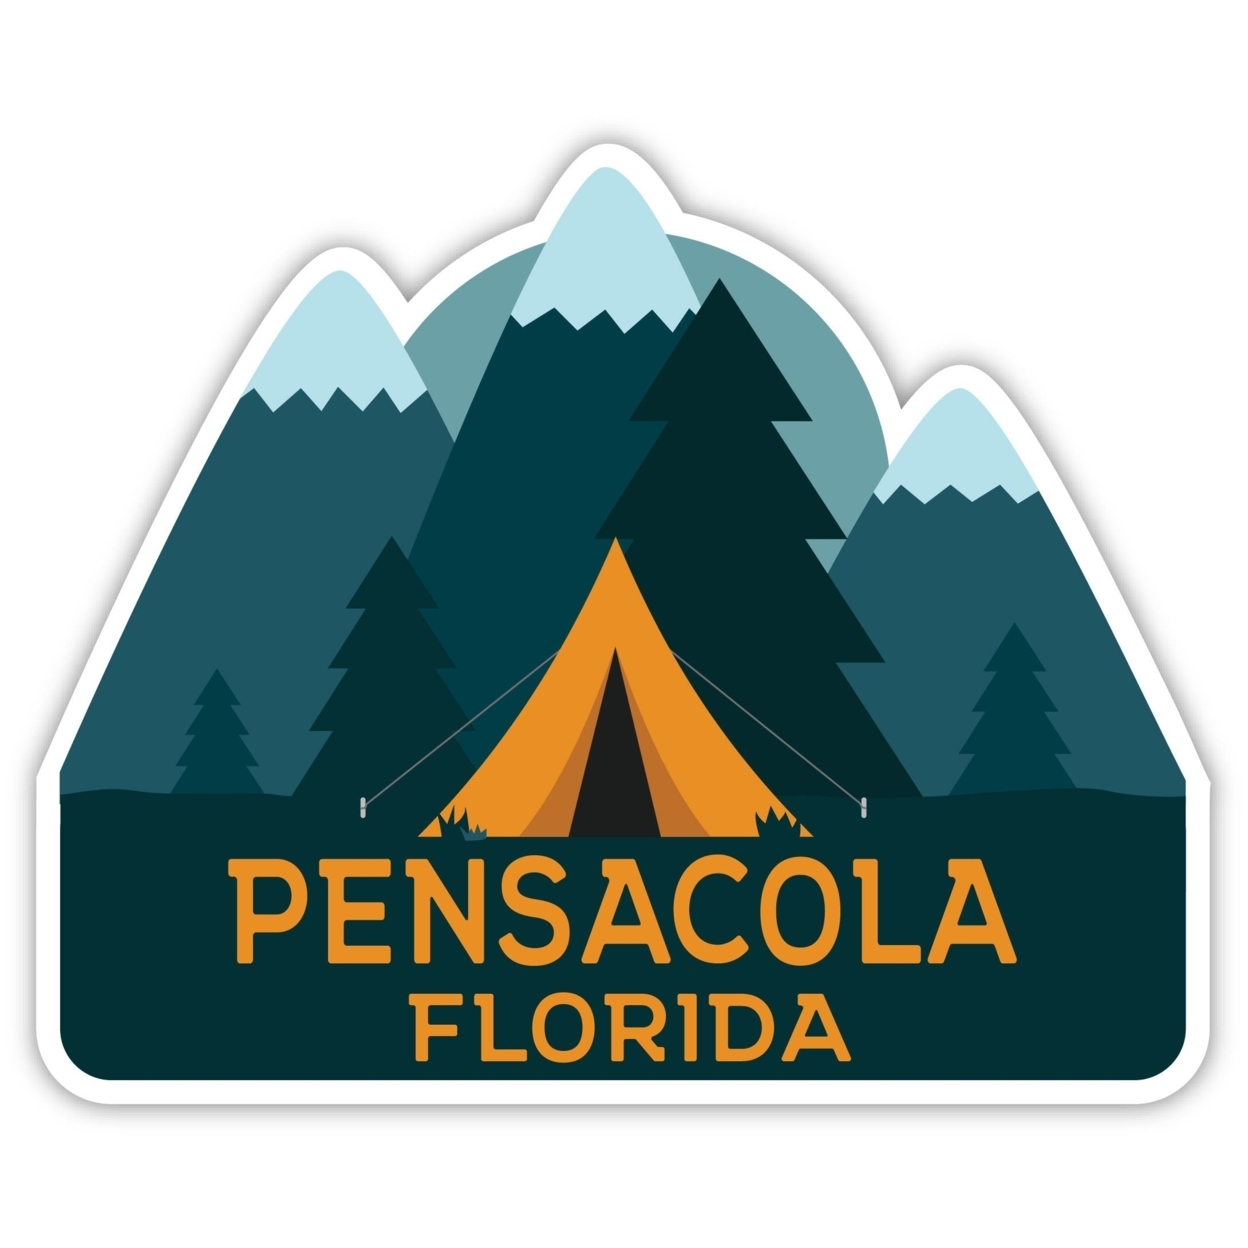 Pensacola Florida Souvenir Decorative Stickers (Choose Theme And Size) - Single Unit, 2-Inch, Tent